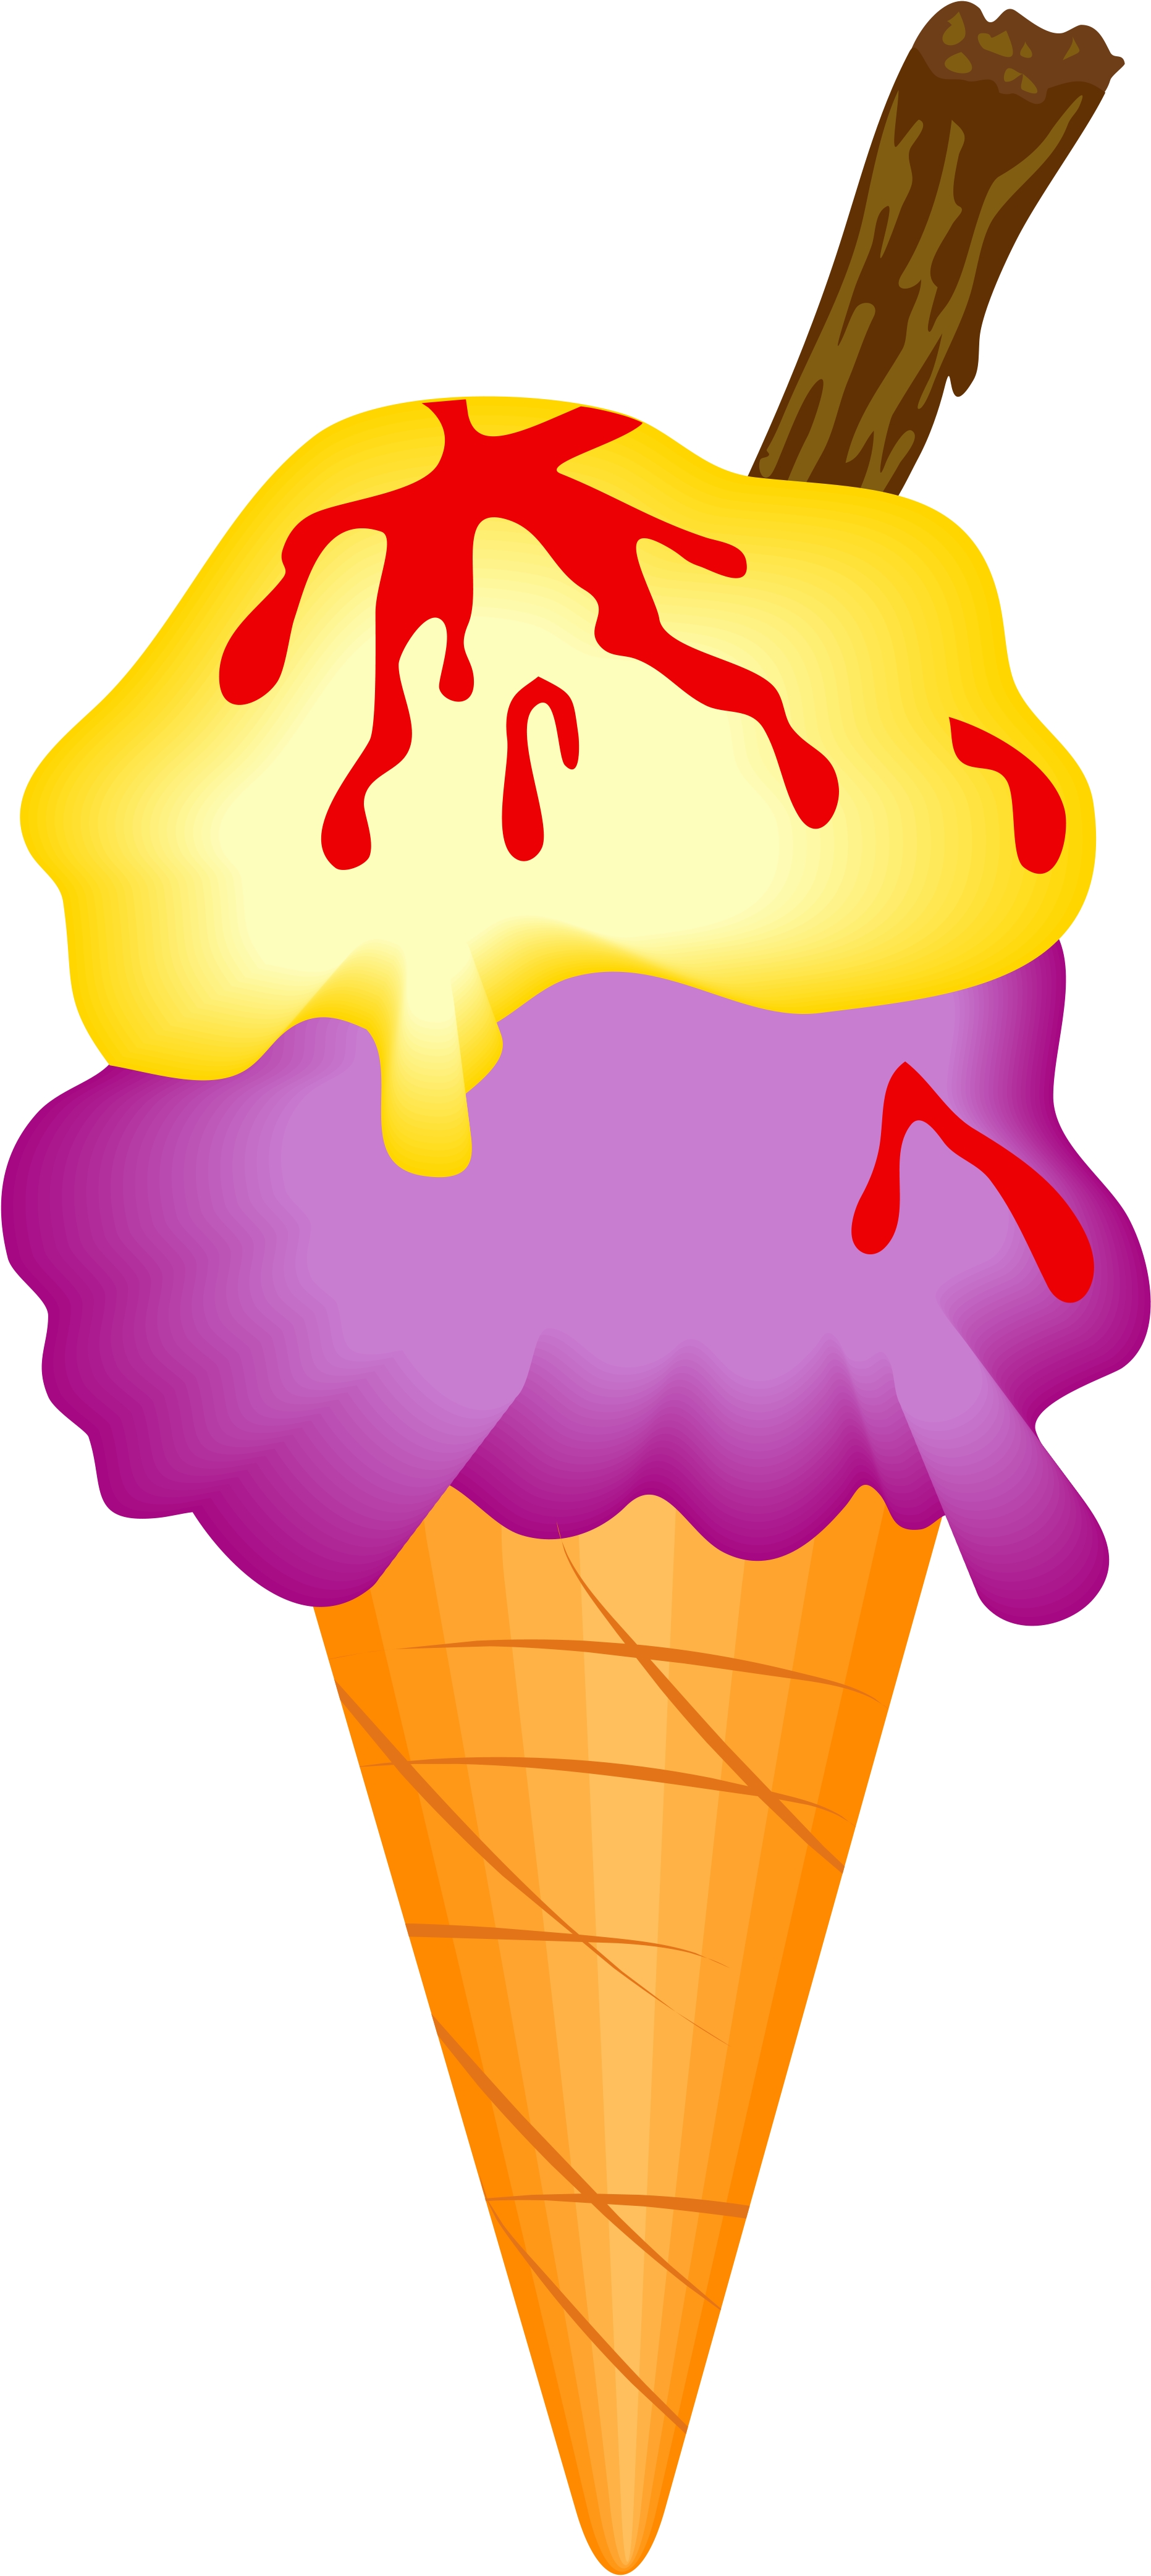 ice cream cone images clip art - photo #49